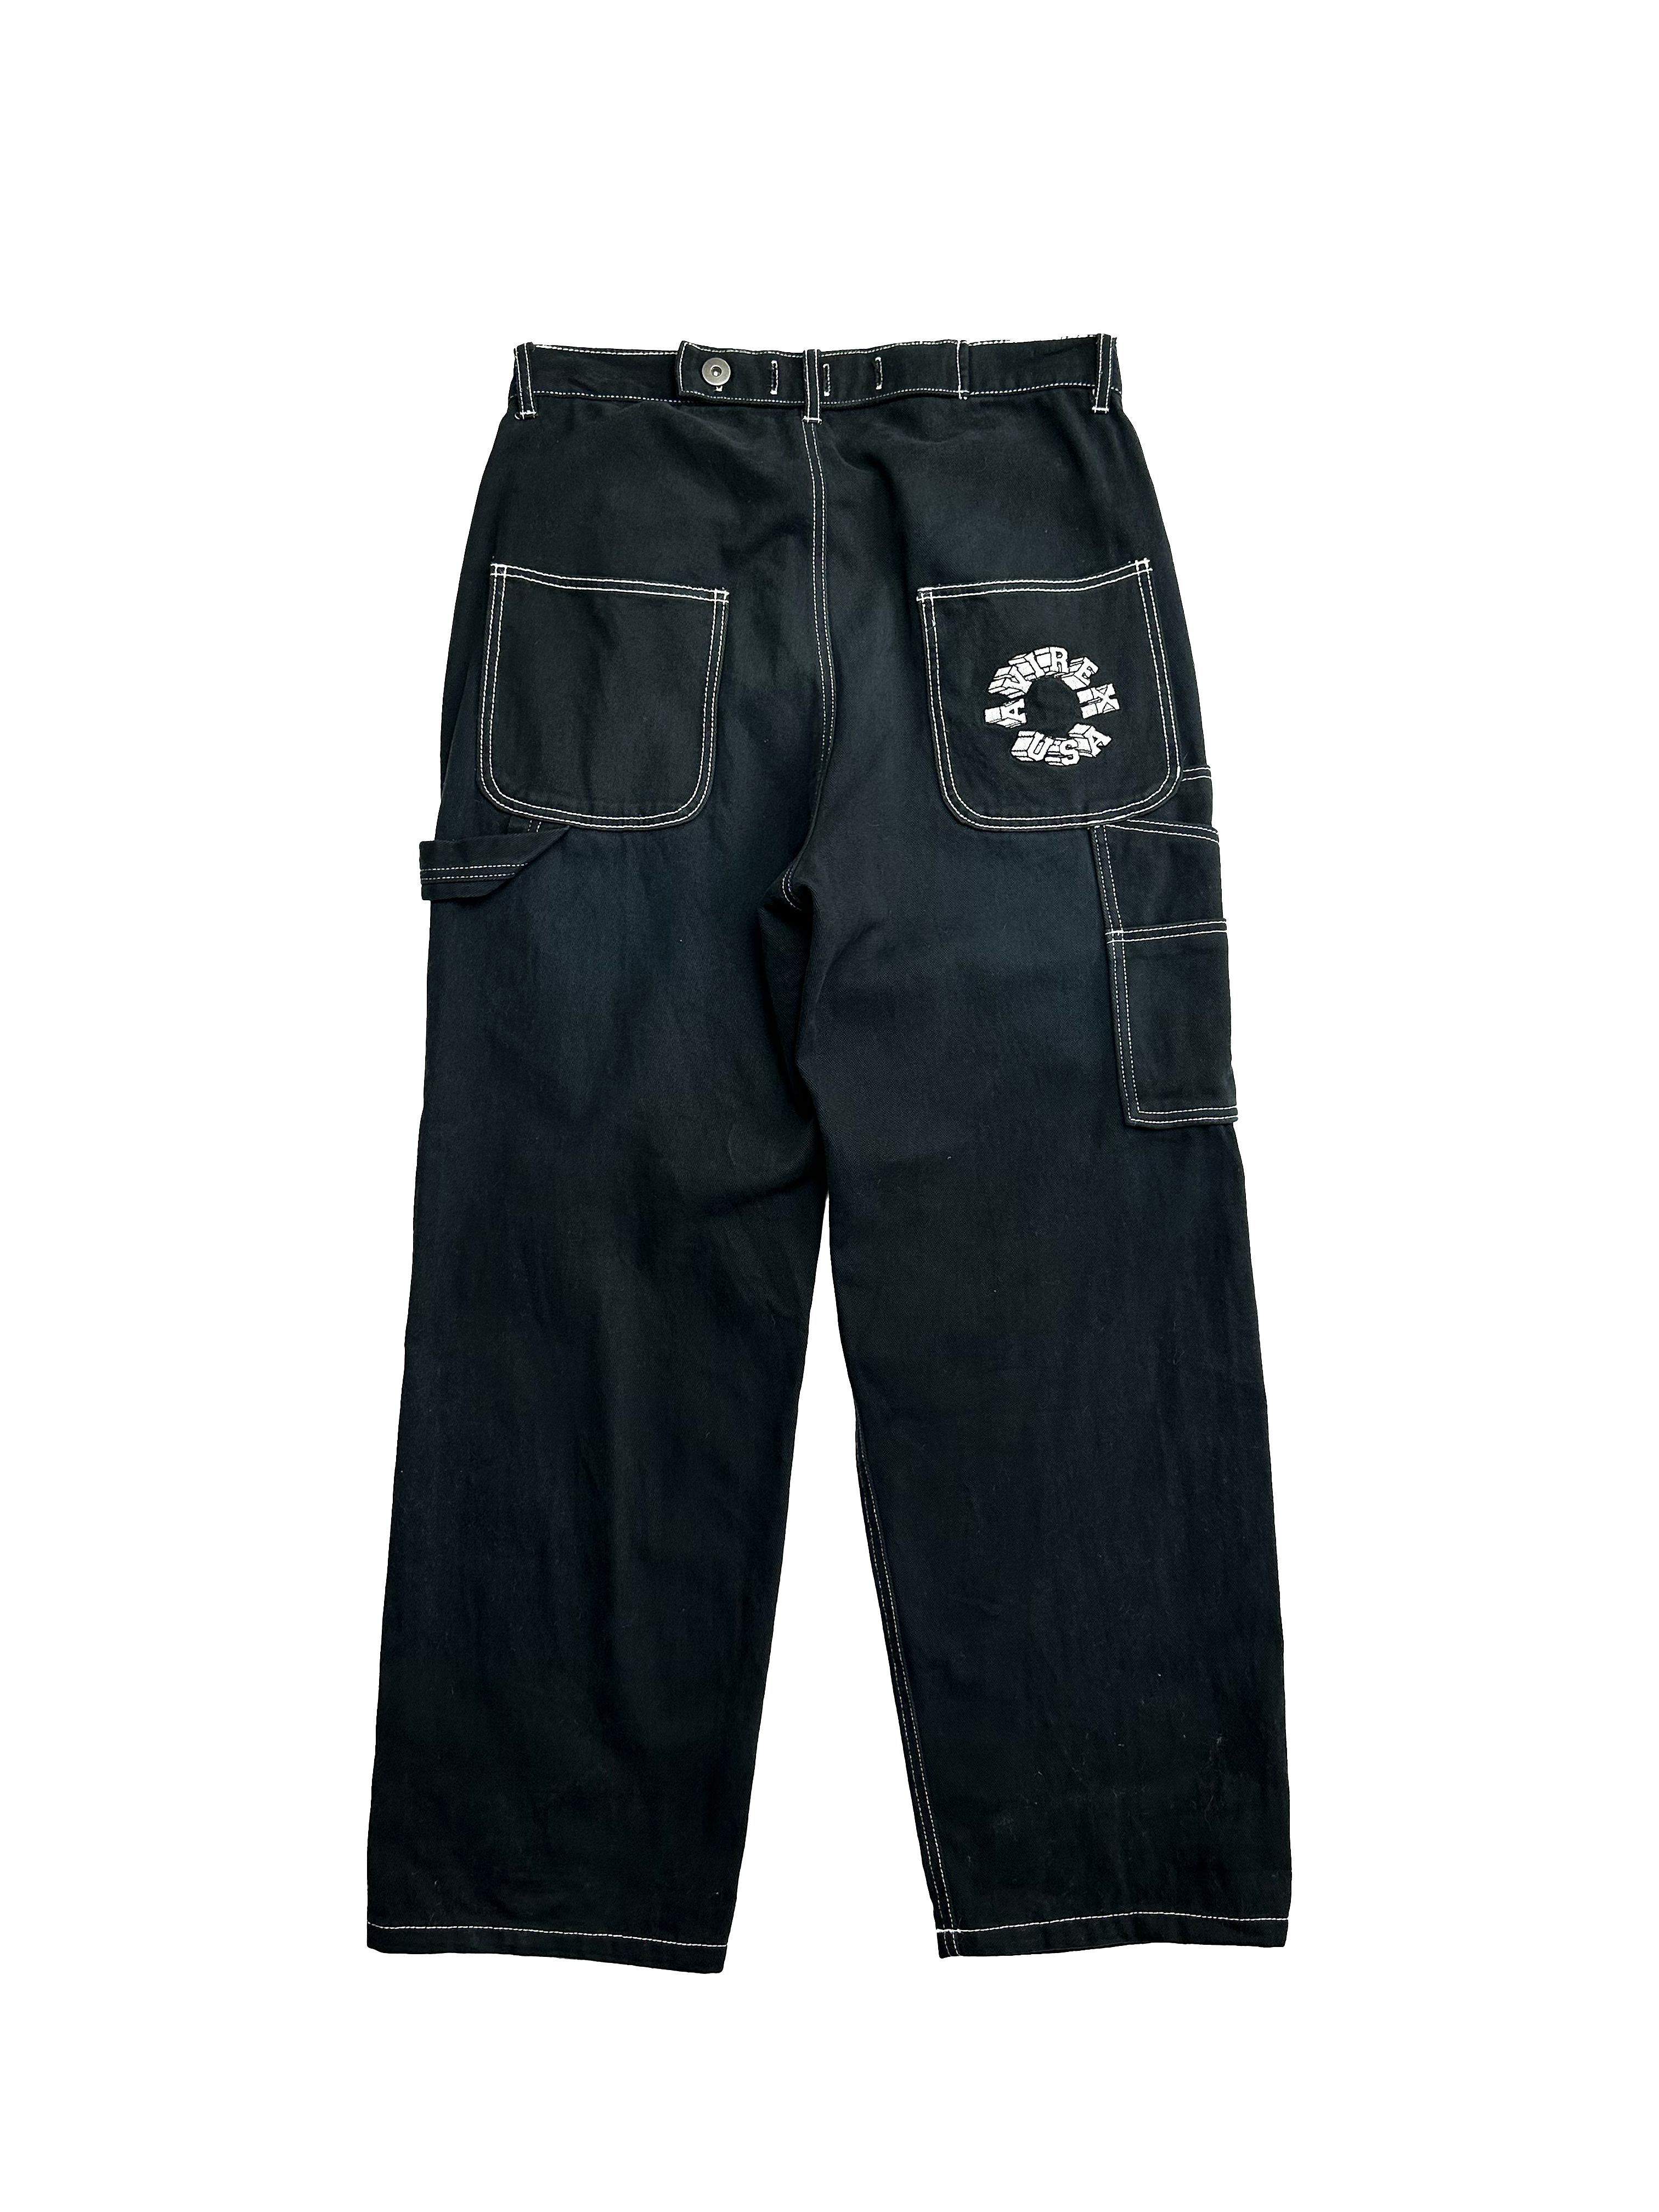 Avirex Black Carpenter Jeans 90's